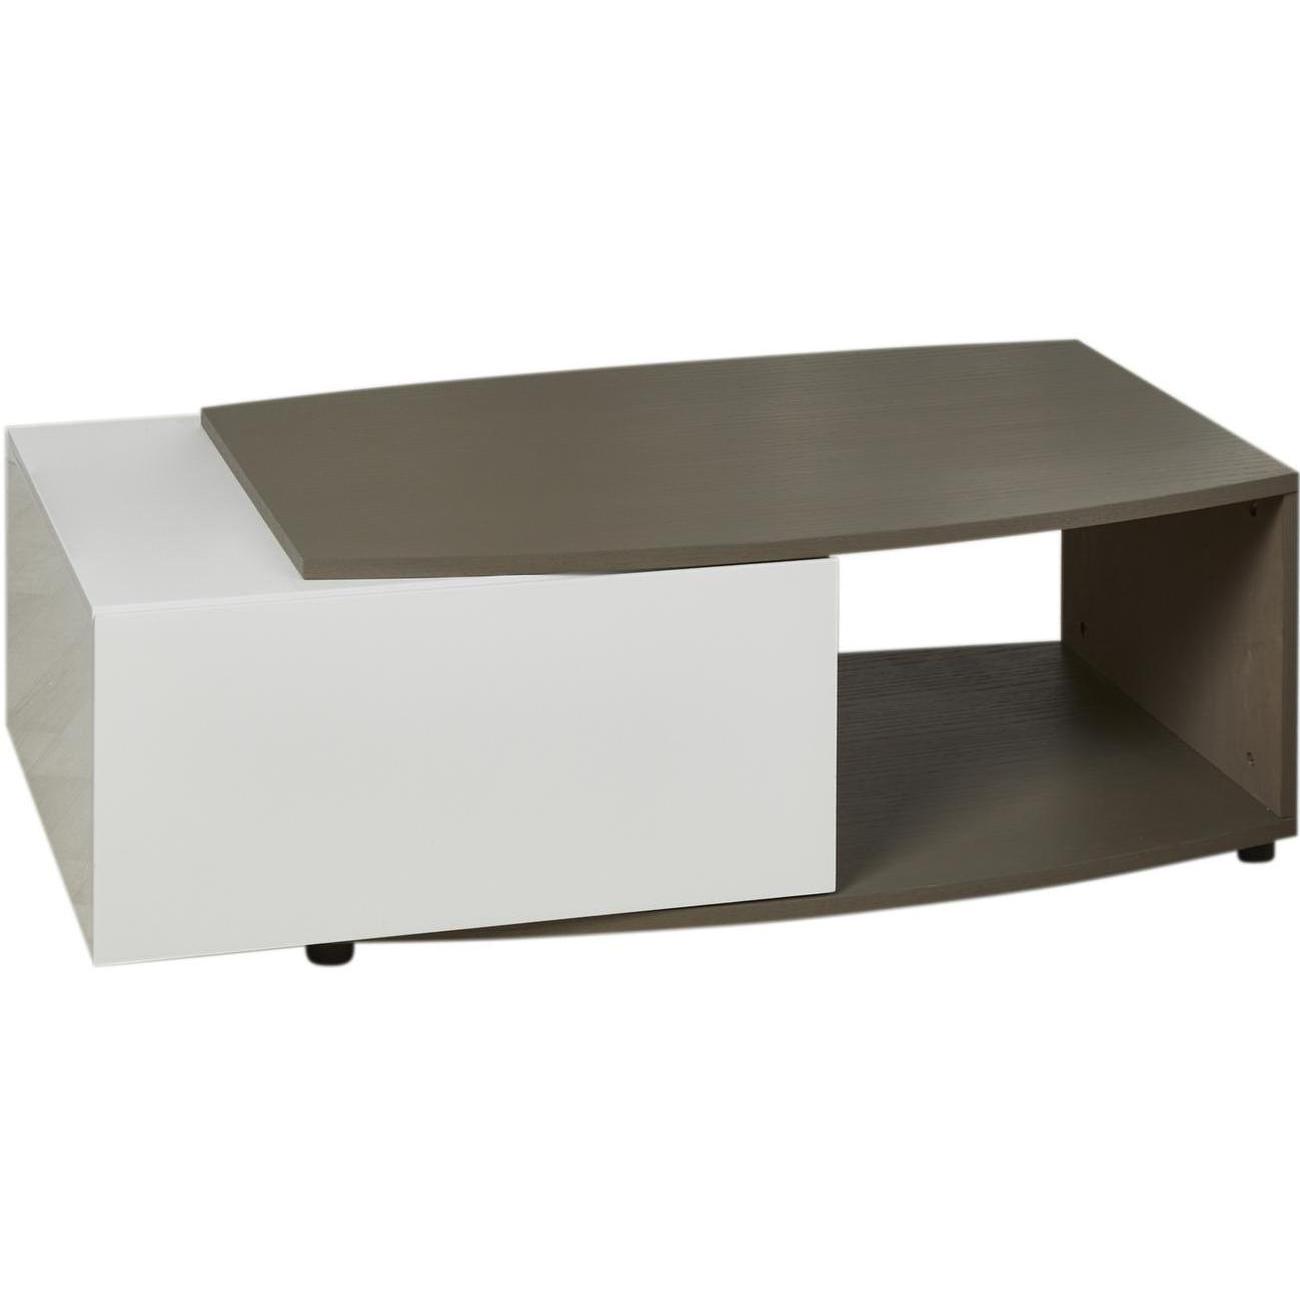 Table basse blanc et marron plateau bois 120x60cm